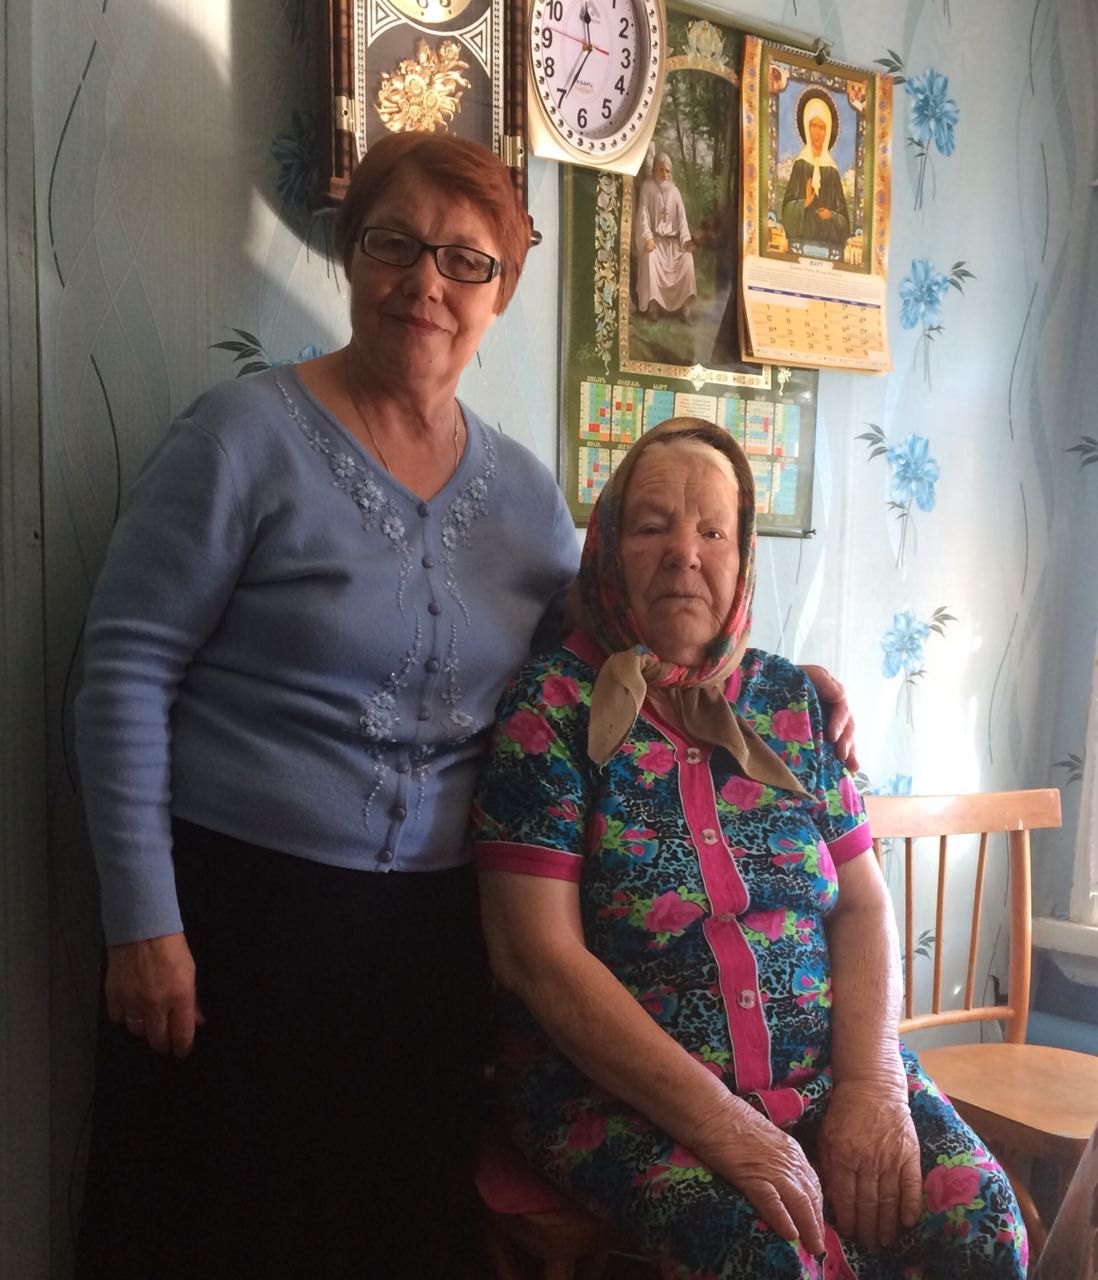 Сёстры милосердия и молодежь Алексеевского района навестили пожилых прихожан